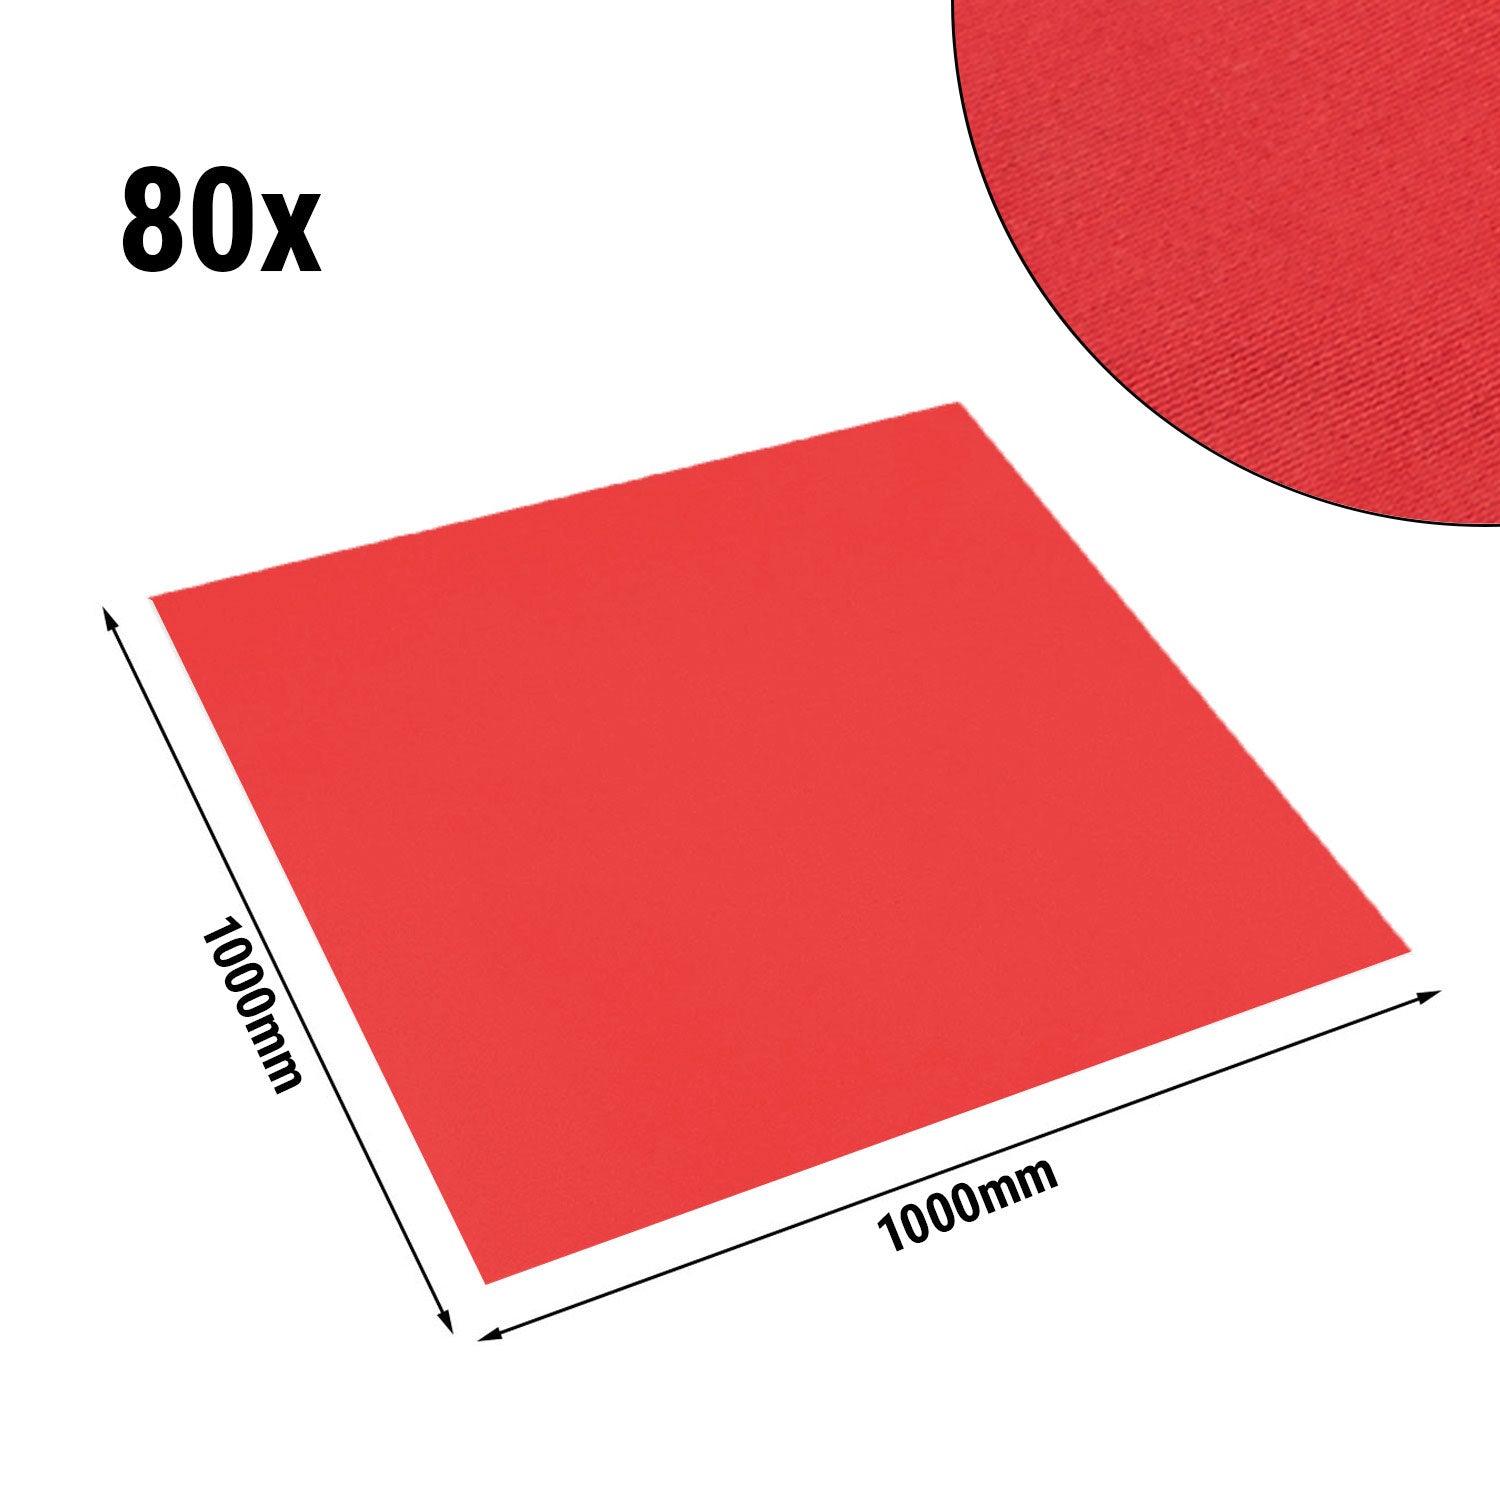 (80 stk.) Vienna Damask Center Blanket - 100 x 100 cm - Fire Red